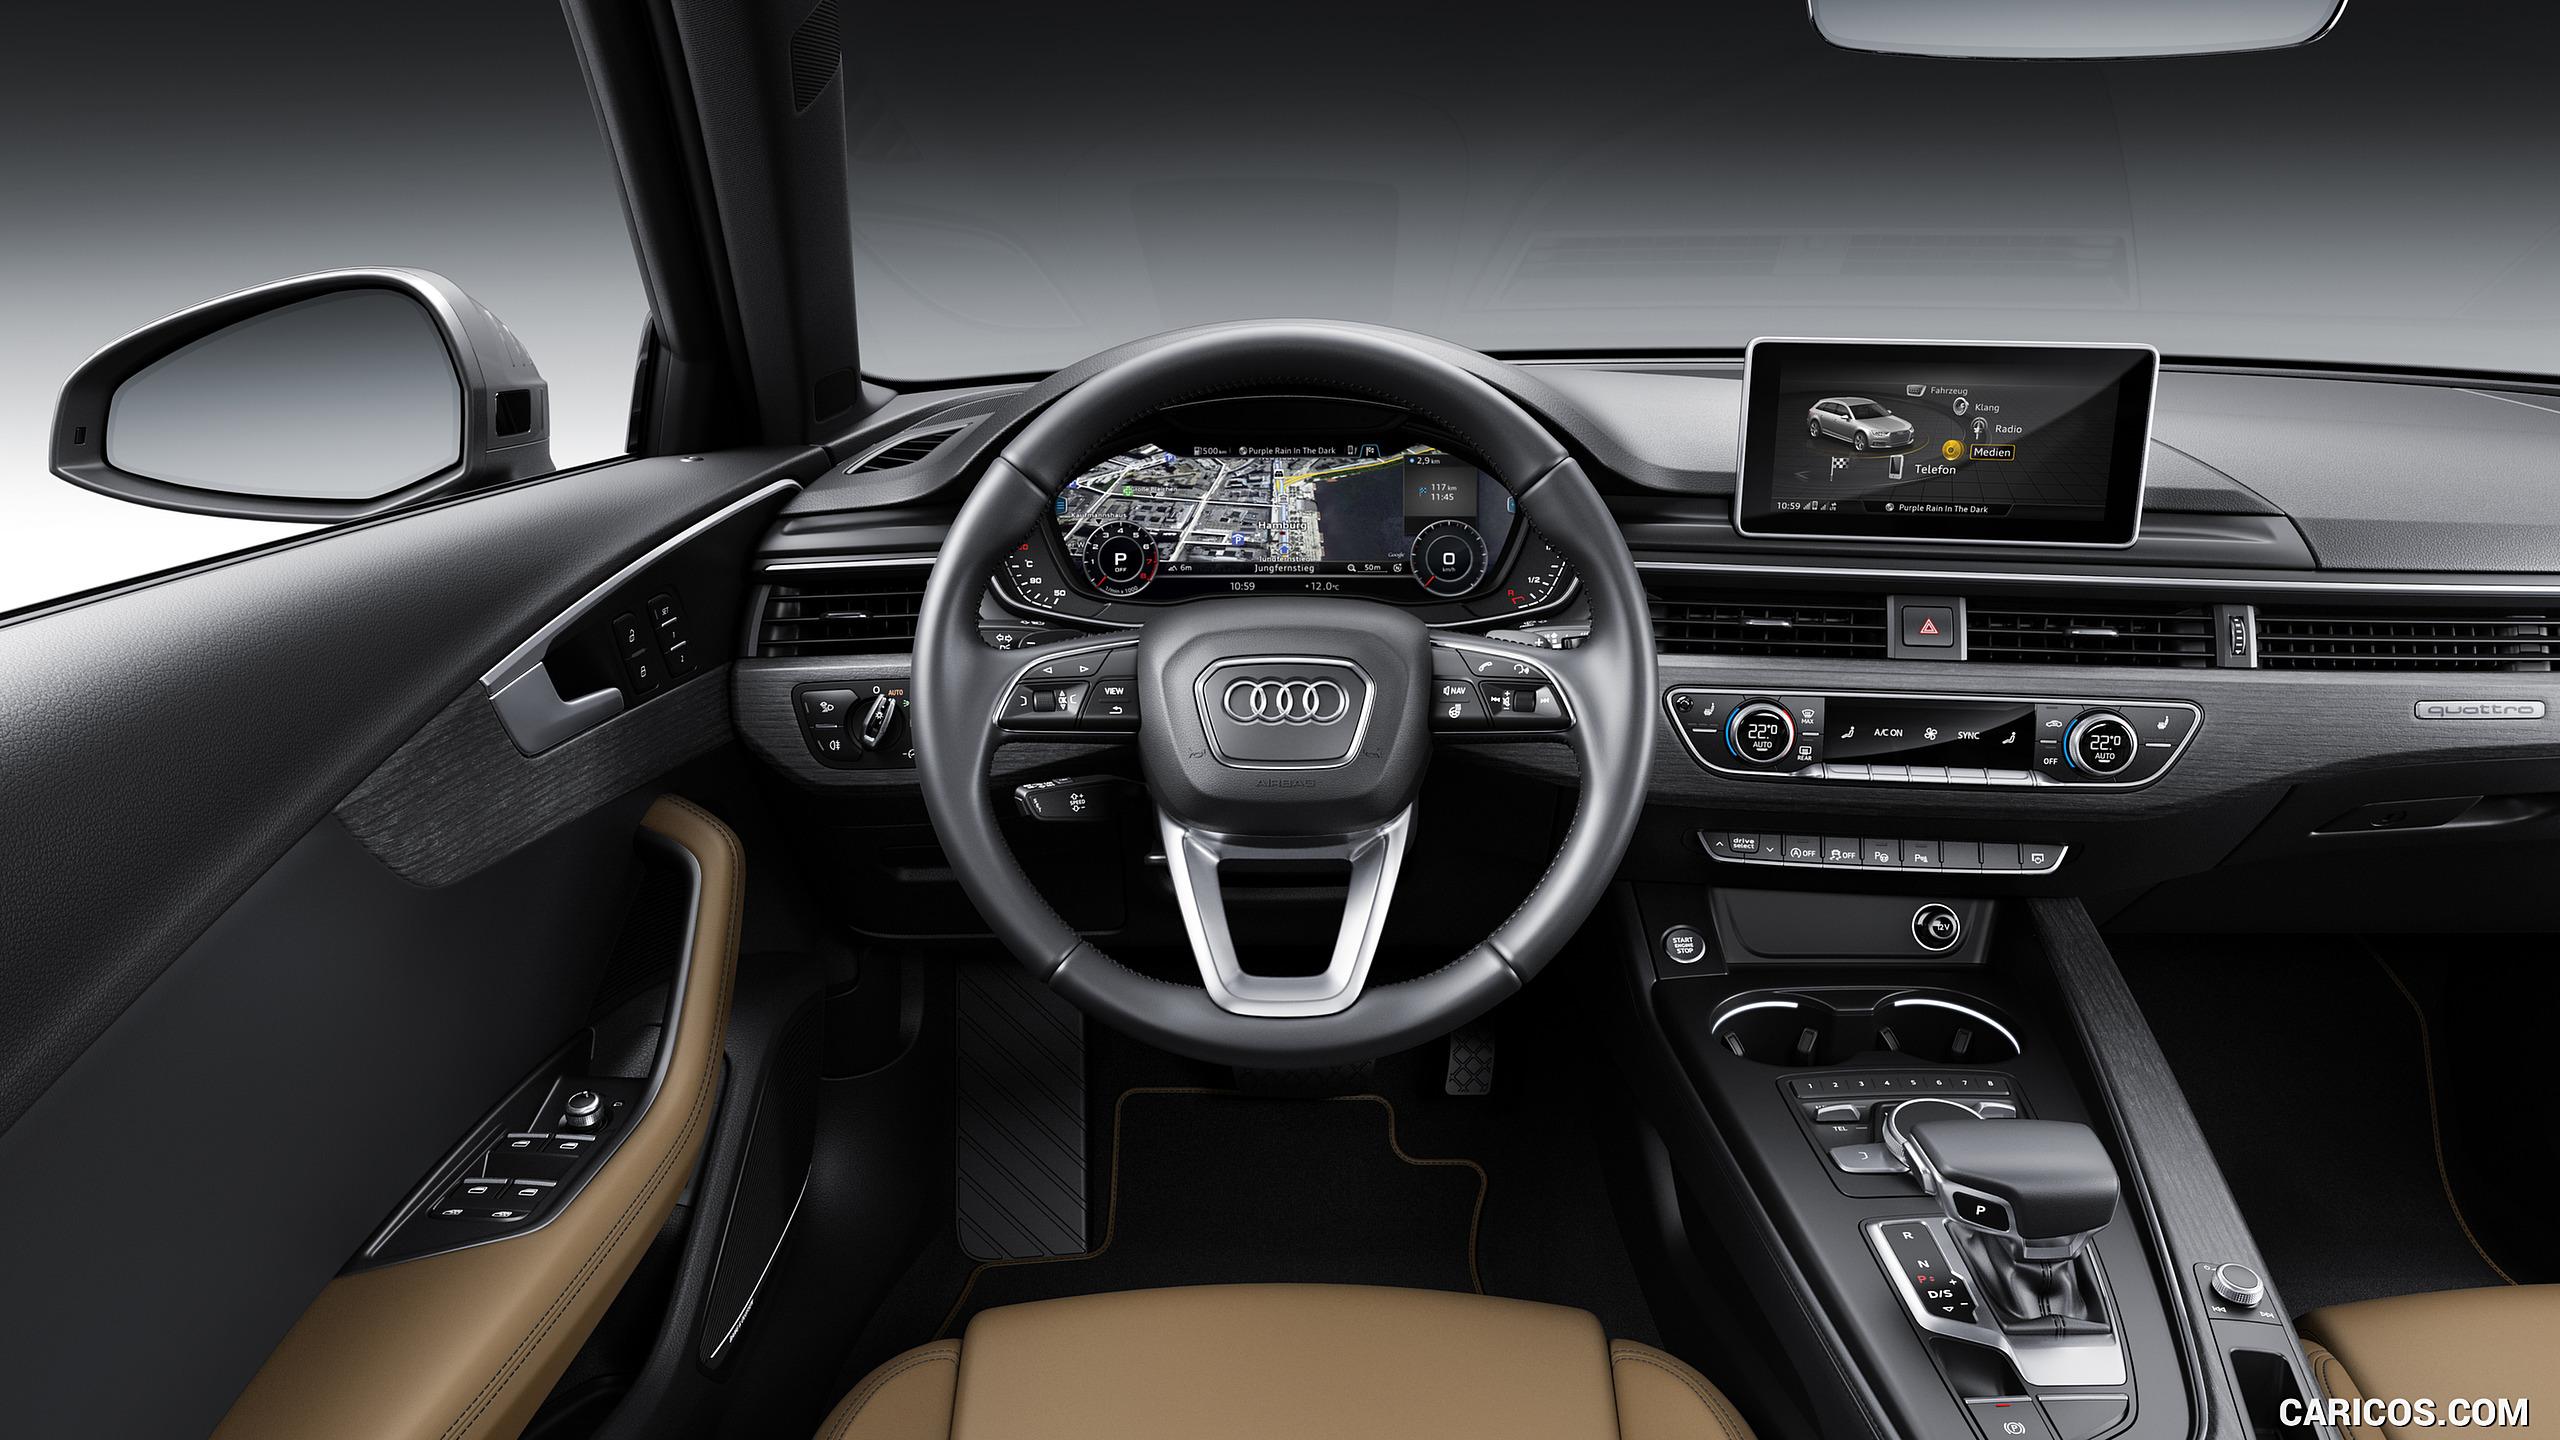 Audi A4 Avant, Cockpit. HD Wallpaper